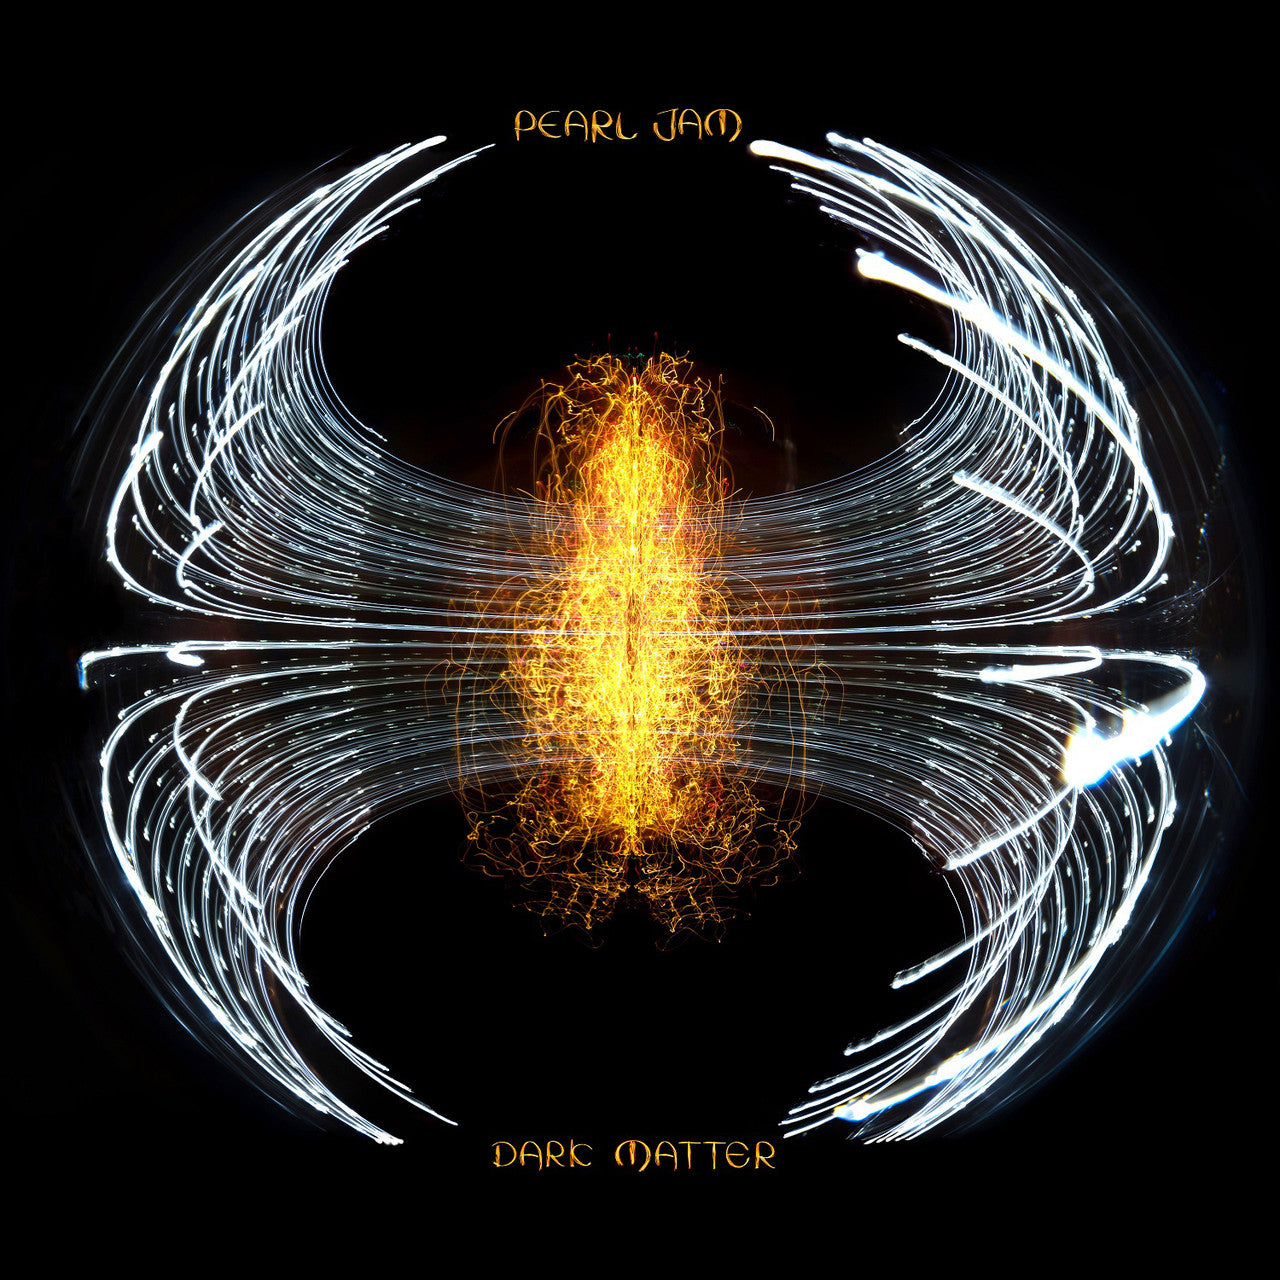 Pearl Jam - Dark Matter (Chicago RSD24 Variant)